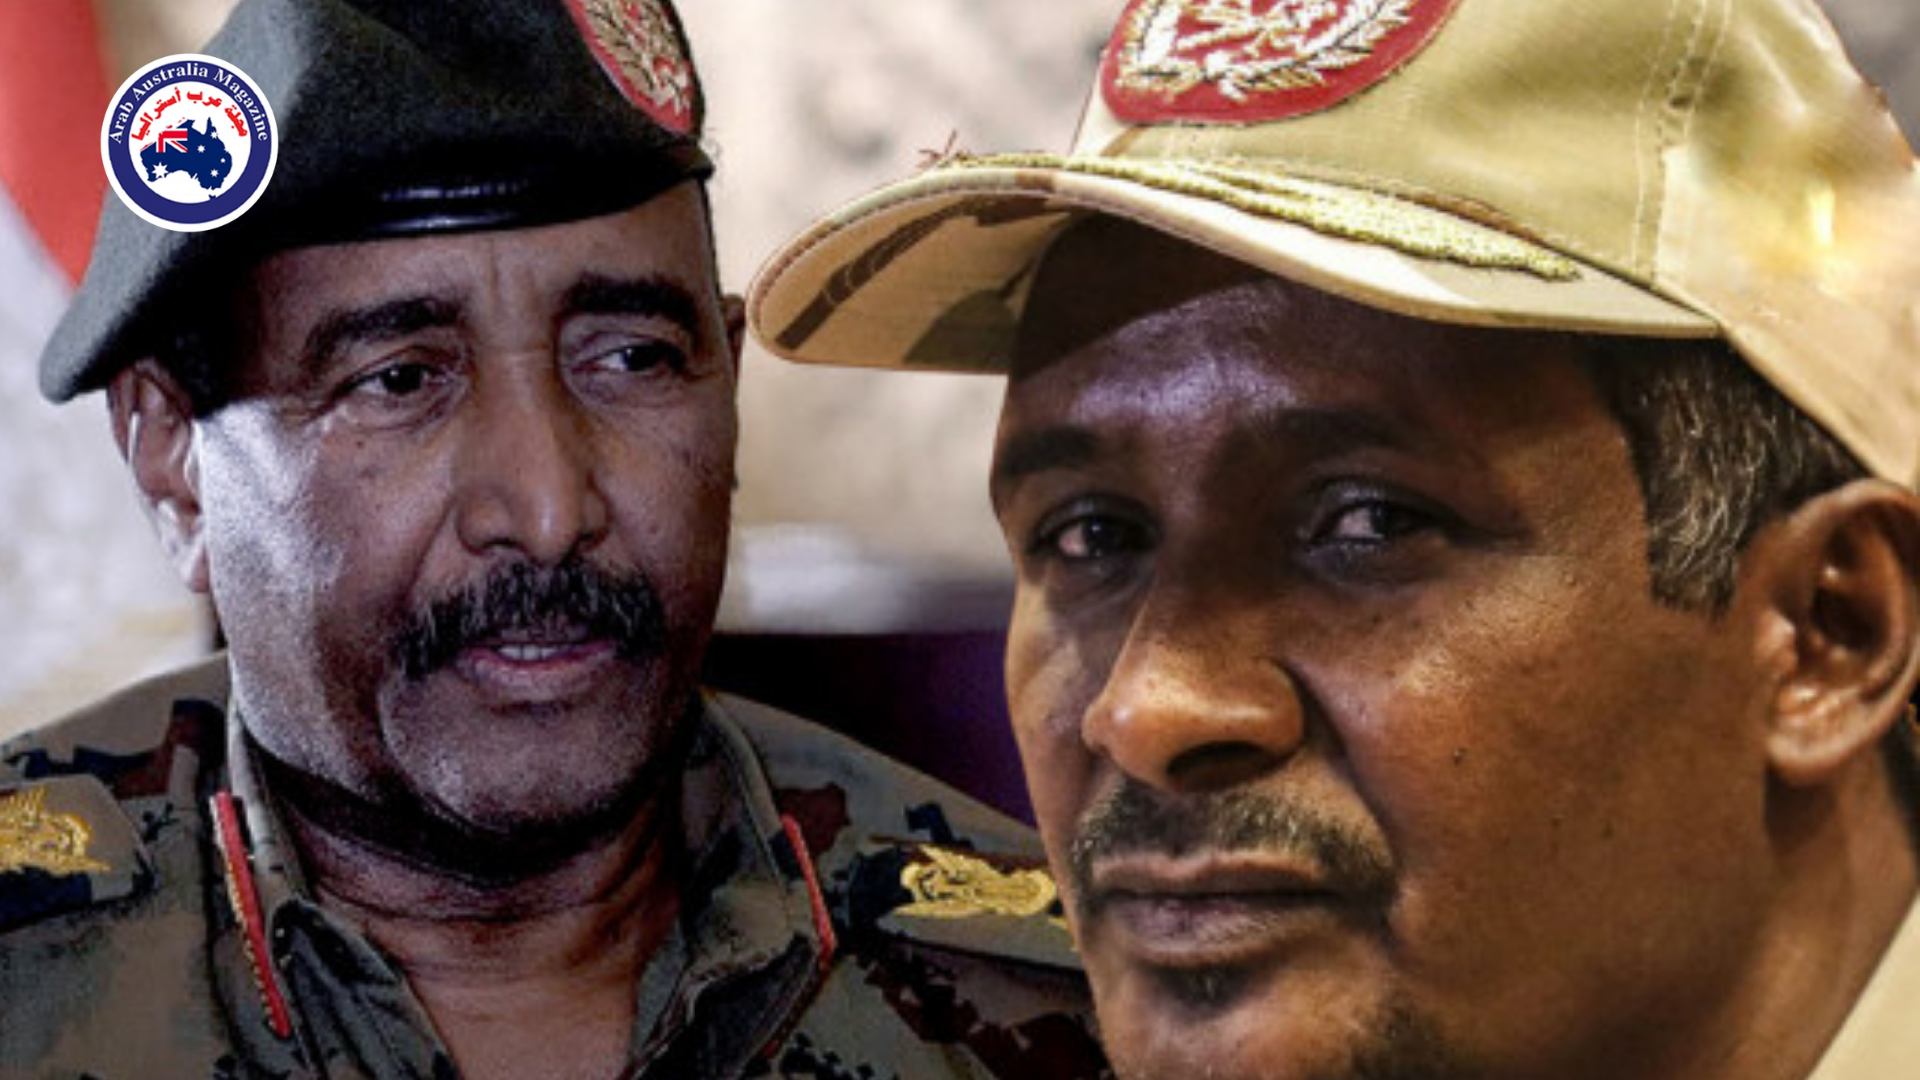 نضال العضايلة- السودان إلى أين؟ إرحموا الشعب يرحمكم الله